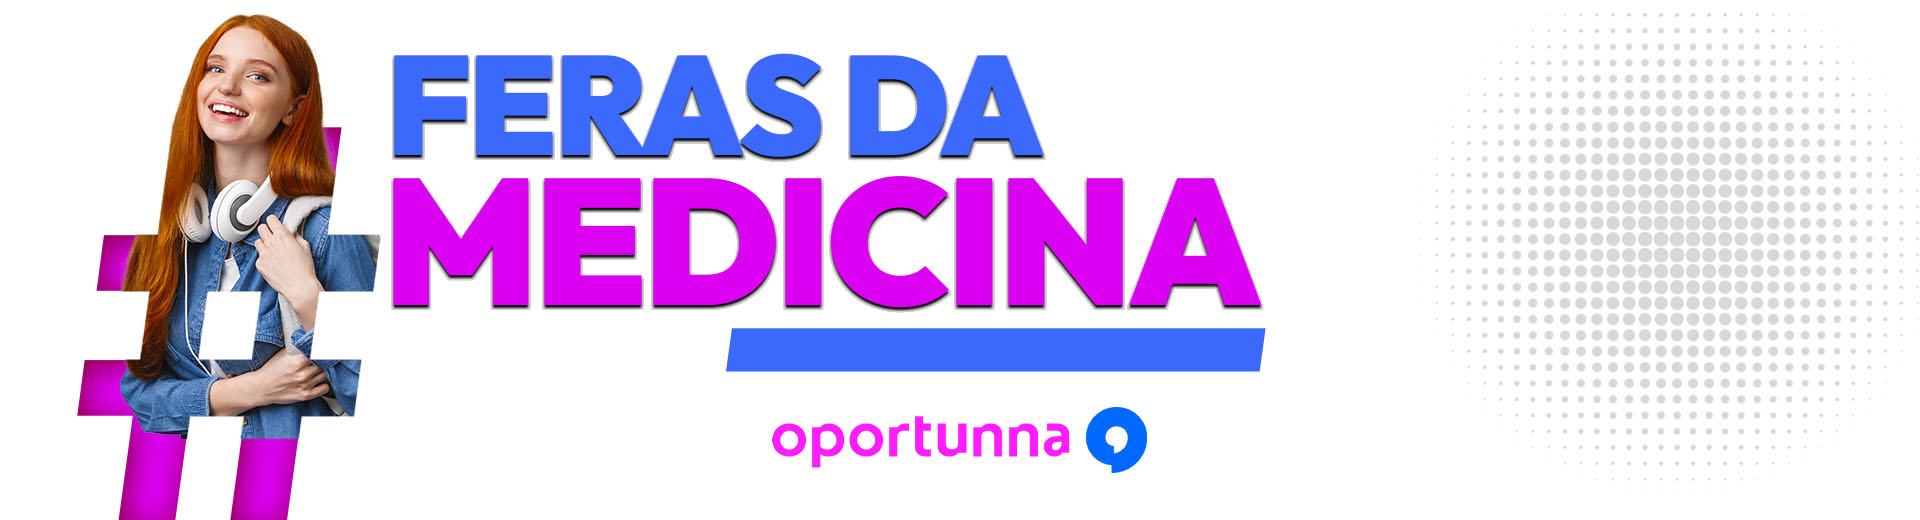 Banner Desktop Feras da MEDICINA